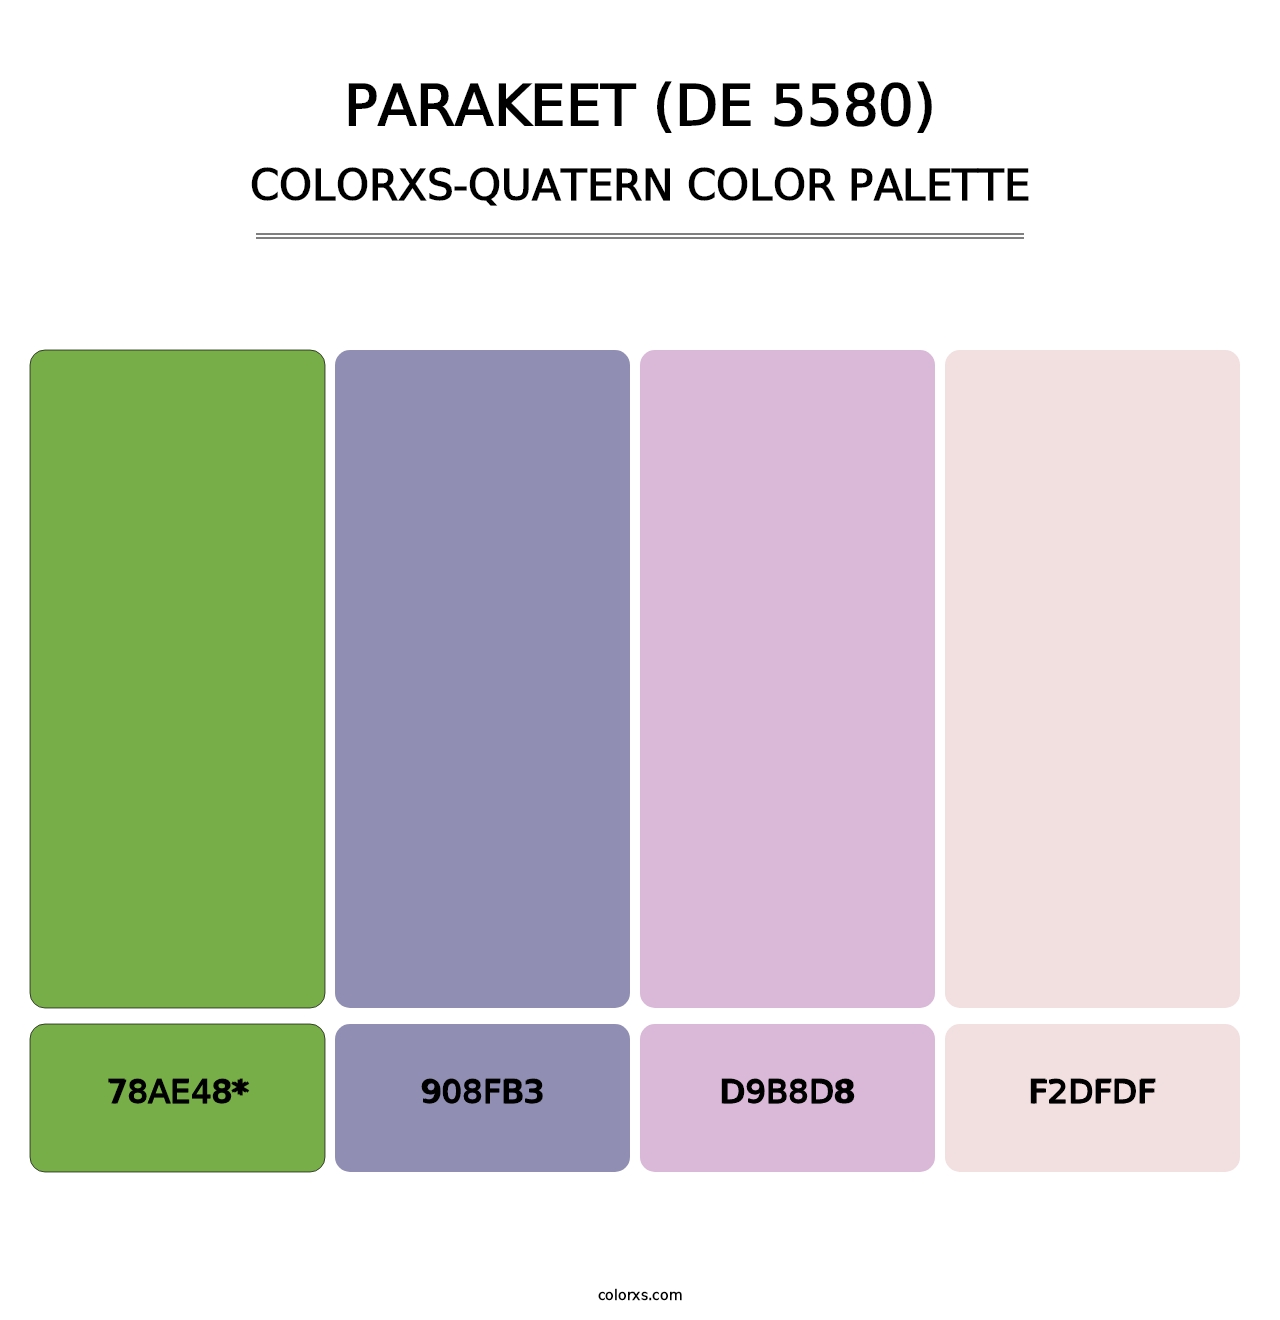 Parakeet (DE 5580) - Colorxs Quatern Palette